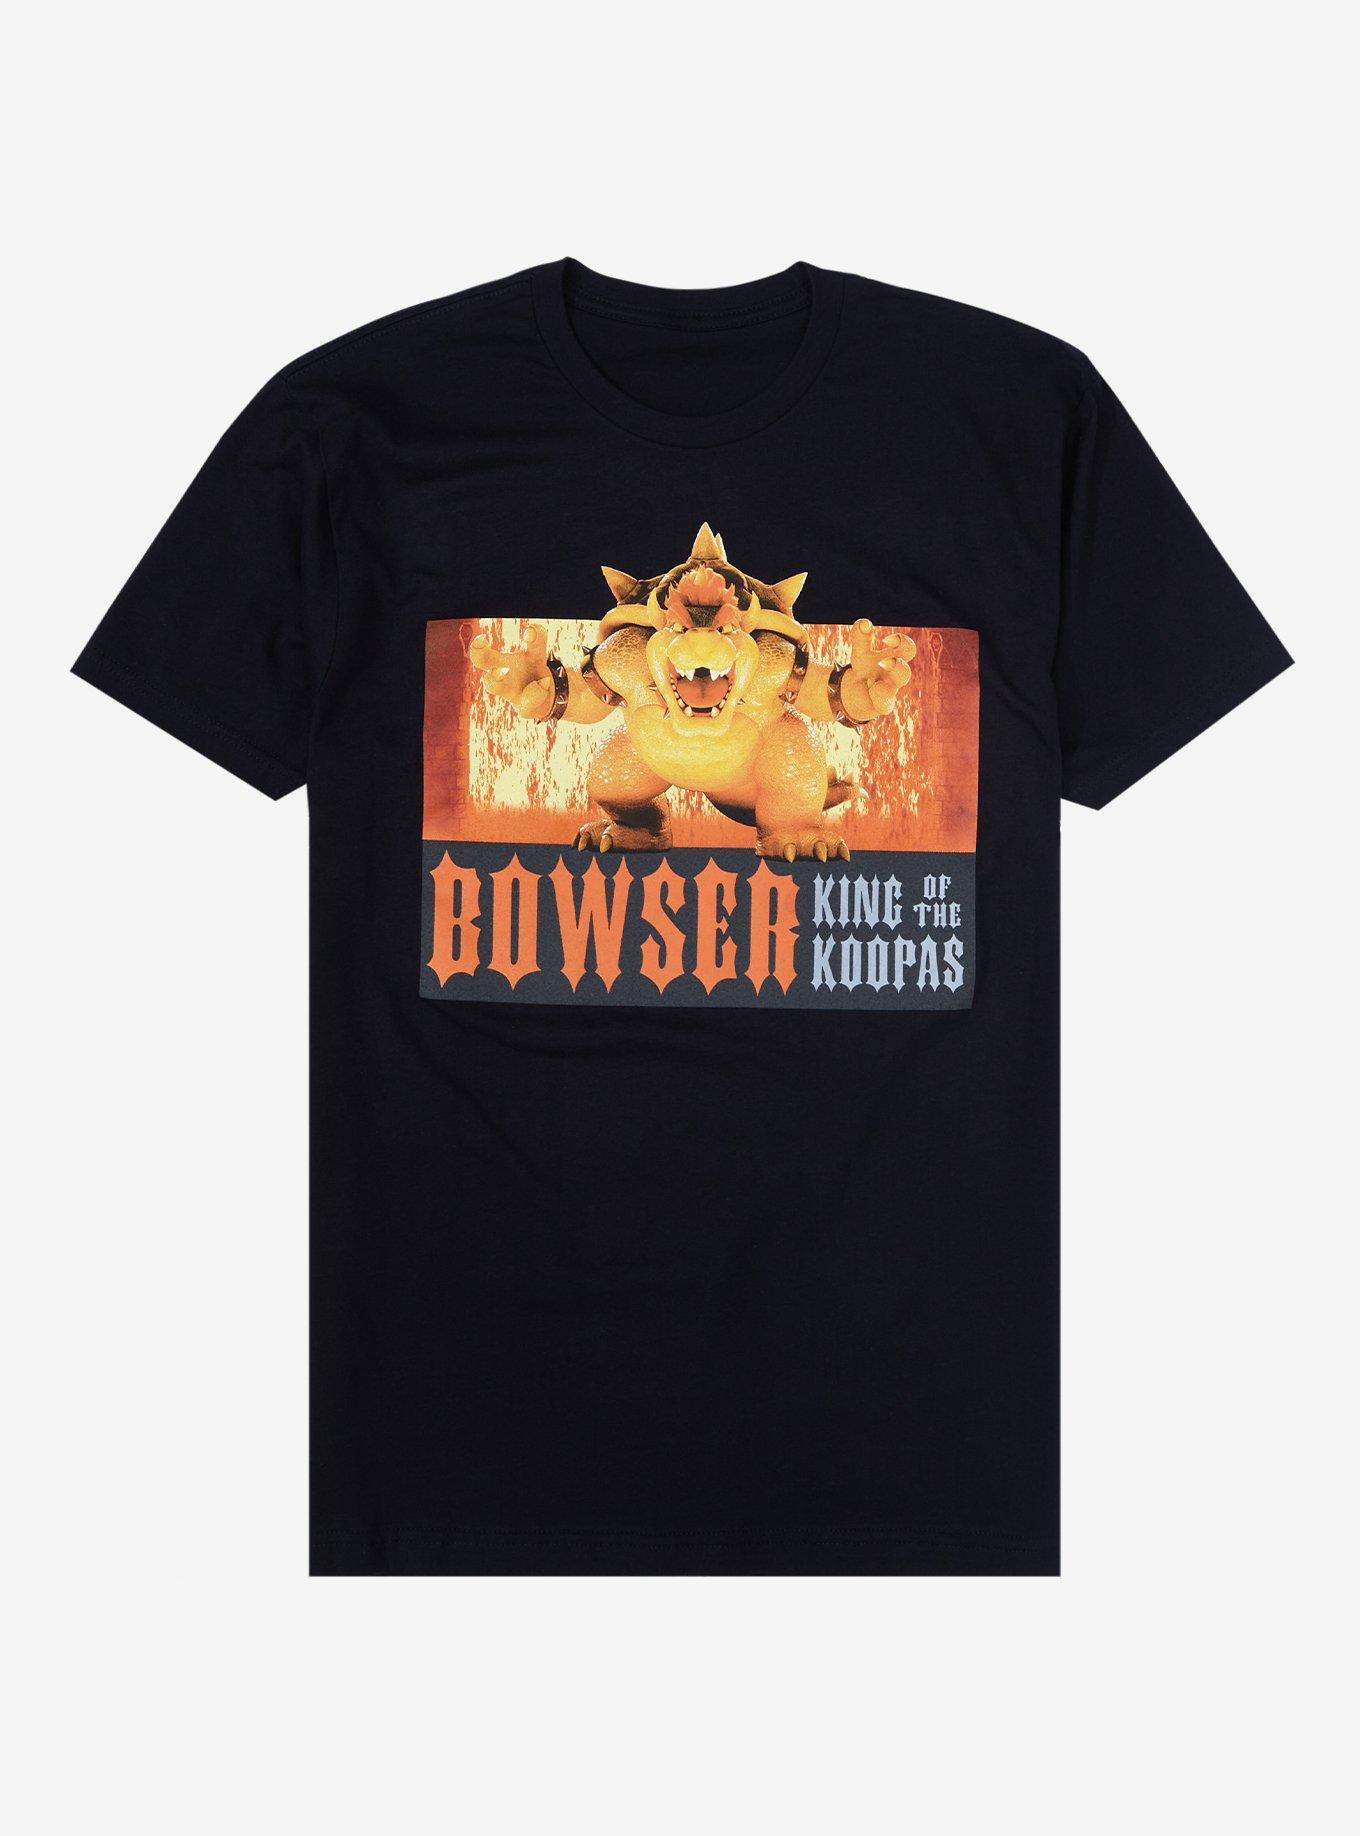 The Super Mario Bros Movie 2023 Bowser All Over Print Shirt - Mugteeco